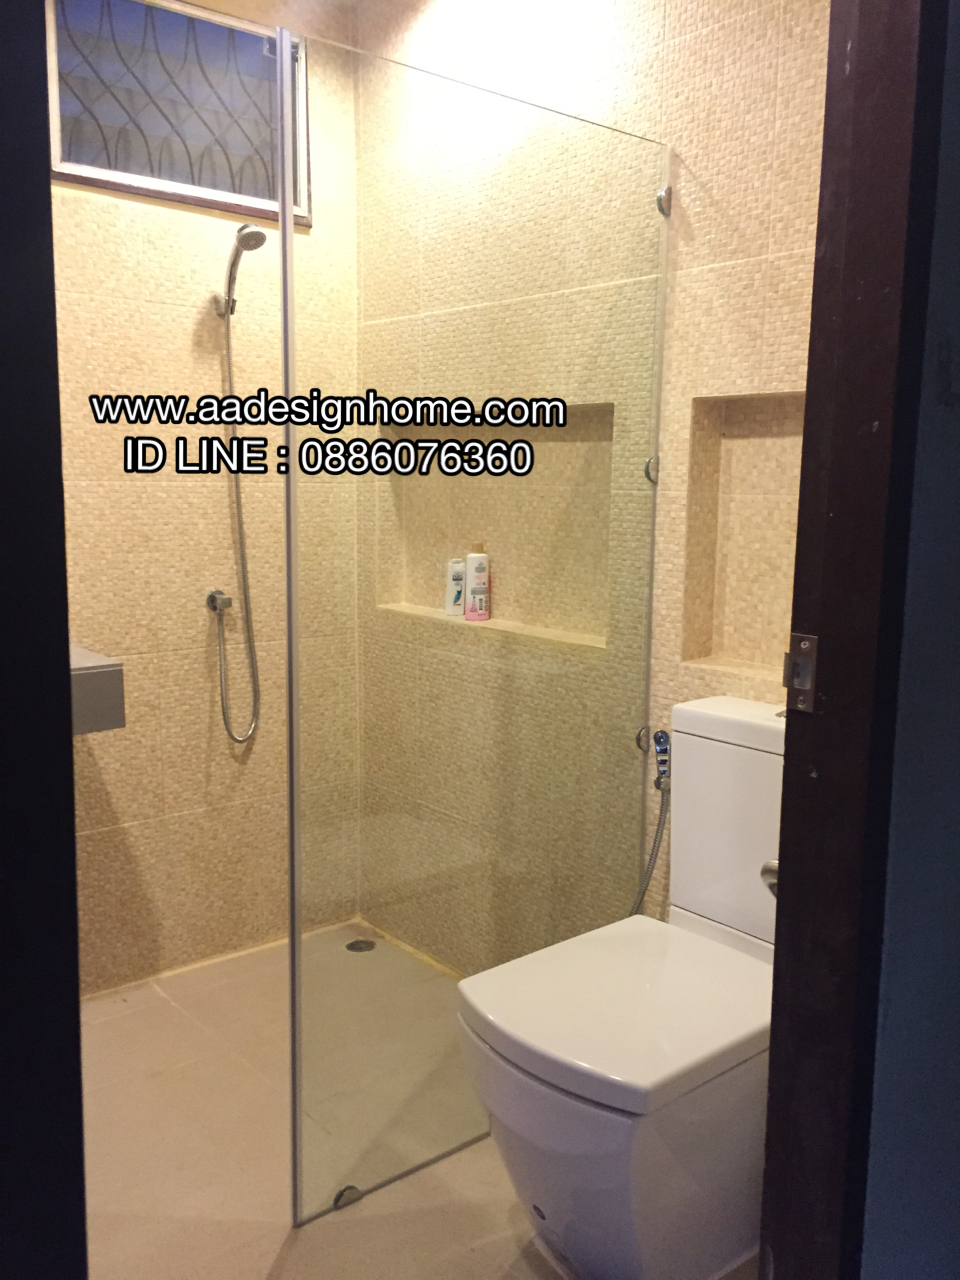 •	ติดตั้ง ฉากกั้นอาบน้ำ กั้นกระจกห้องน้ำ กระจเทมเปอร์ หนา 10 มิล ราคาถูกกว่าห้าง 30-40% รูปที่ 1